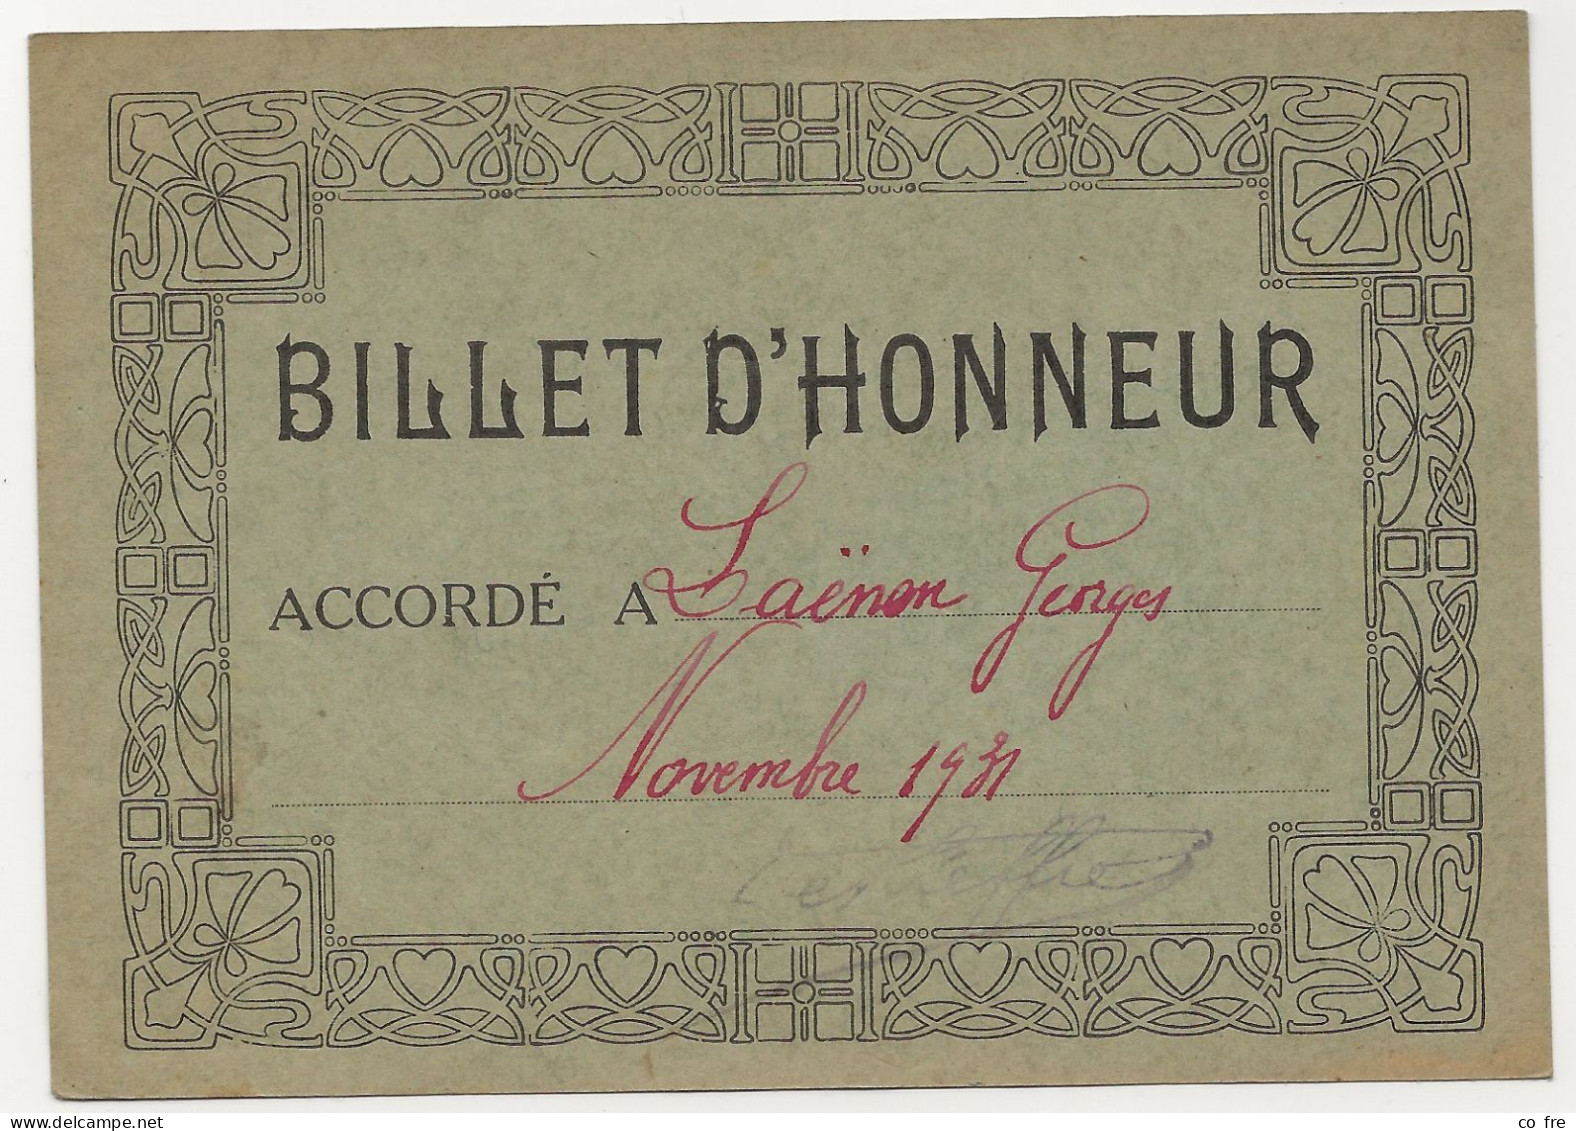 Billet D'honneur De 1931 Pour G. Laenens - Diplome Und Schulzeugnisse